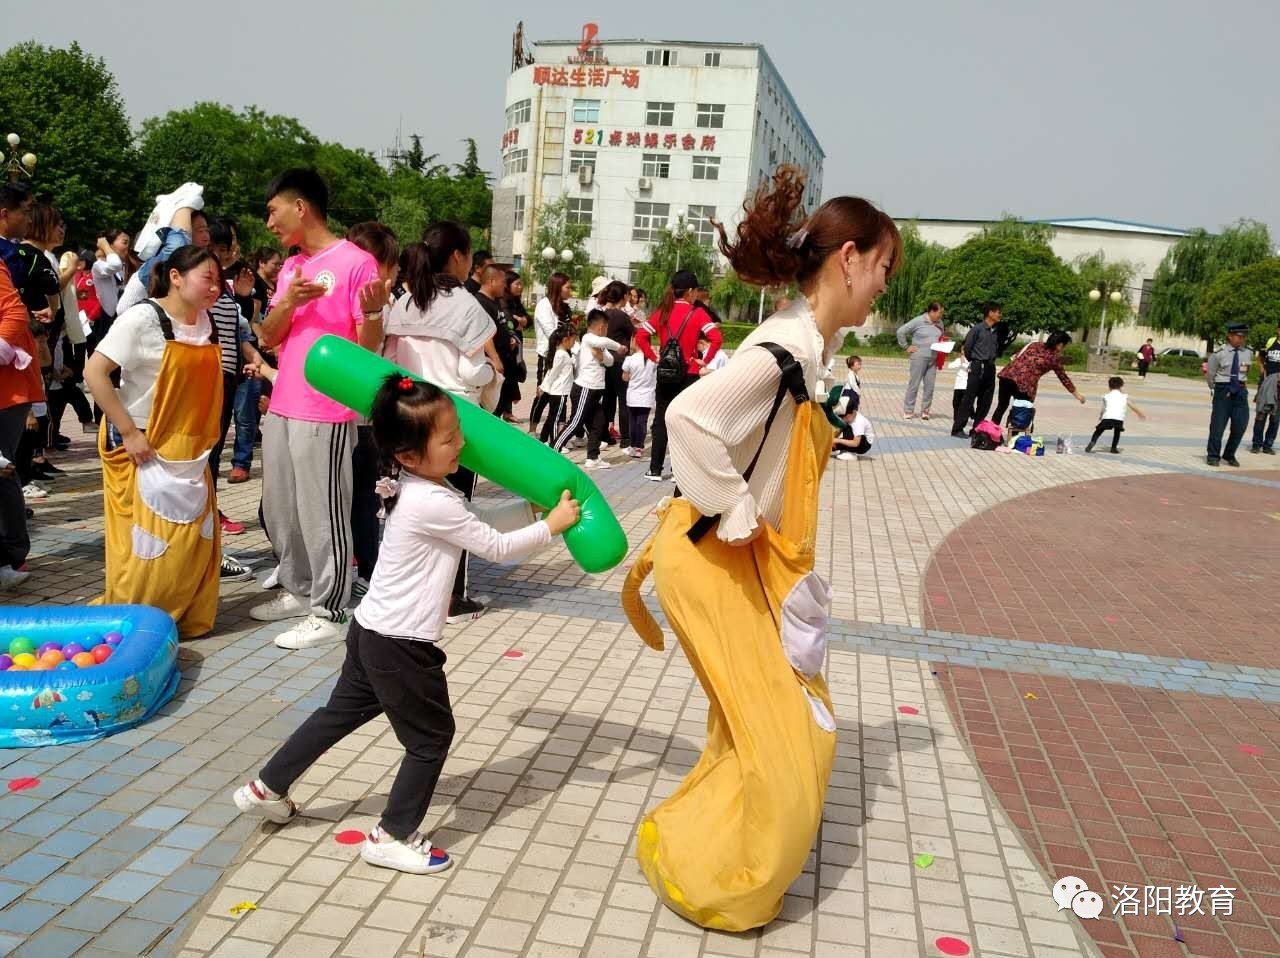 【县区传真】吉利区直幼儿园举办大型亲子趣味运动会